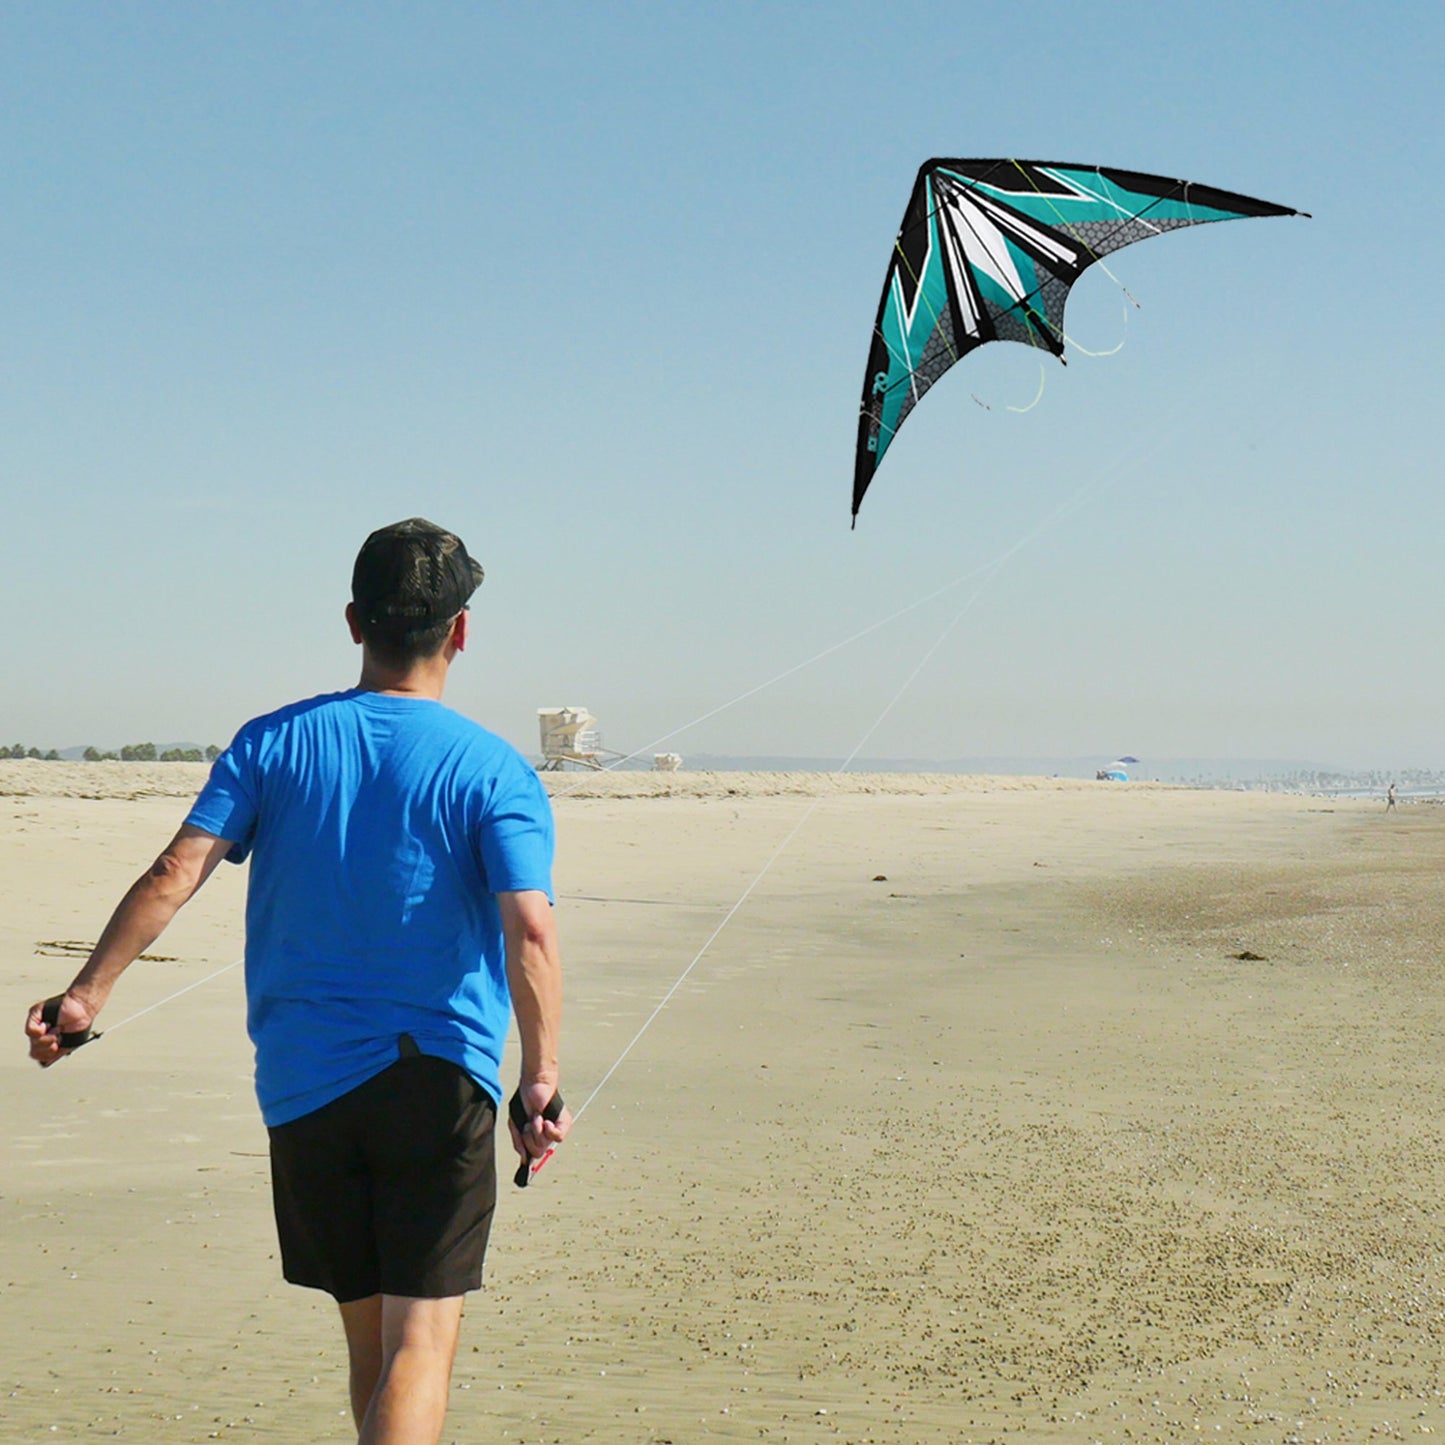 WindNSun EZ Sport 70 Dual Control Sport Kite Teal Stripe Nylon Kite lifestyle shot